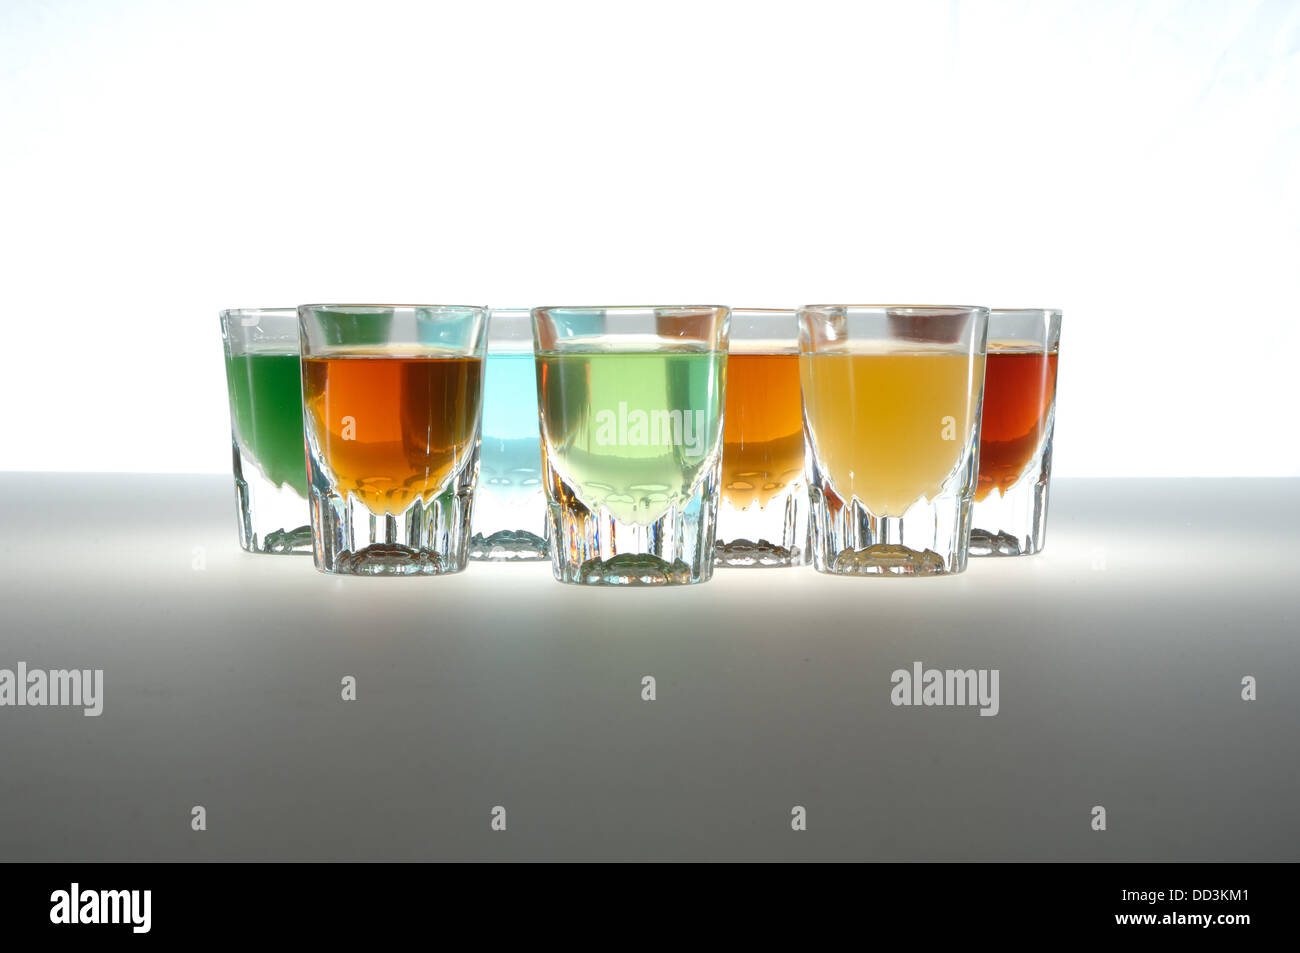 Kleinen Barware Gläser gefüllt mit bunten Flüssigkeiten. Auch bekannt als Schnapsgläser. Stockfoto